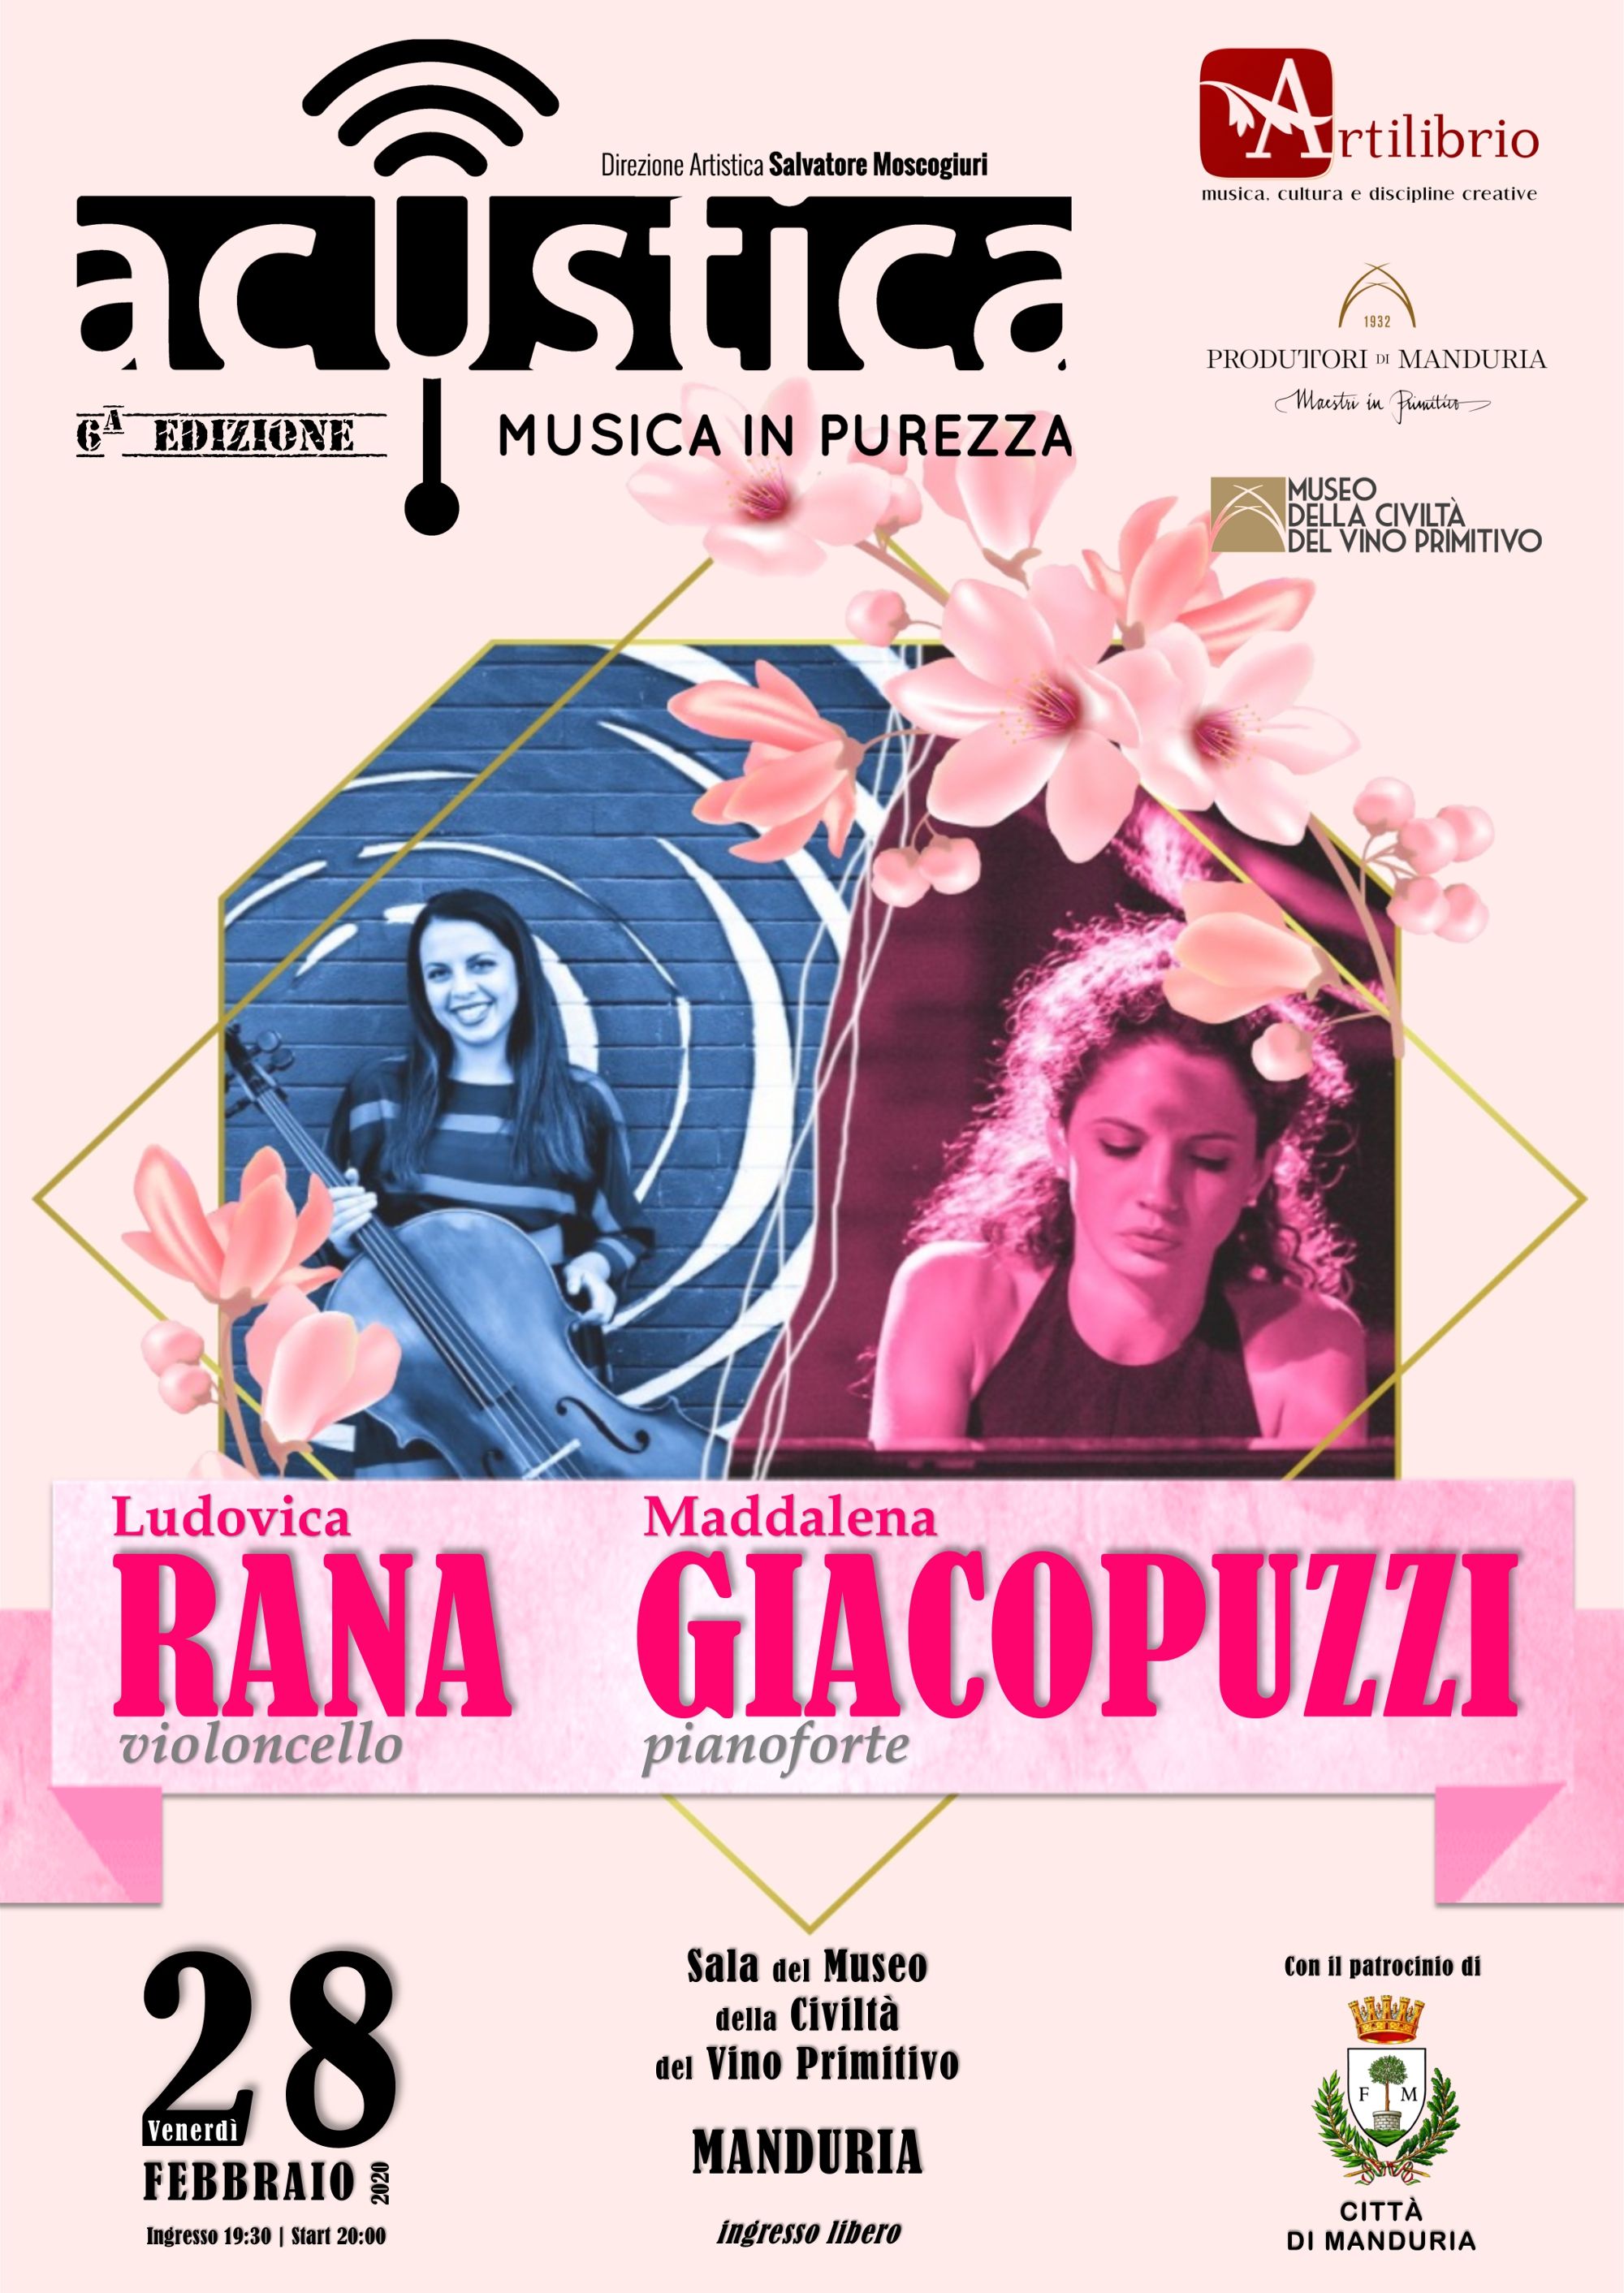 MANDURIA. Il duo Rana-Giacopuzzi chiude la 6a edizione di Acustica con Brahms e Chopin